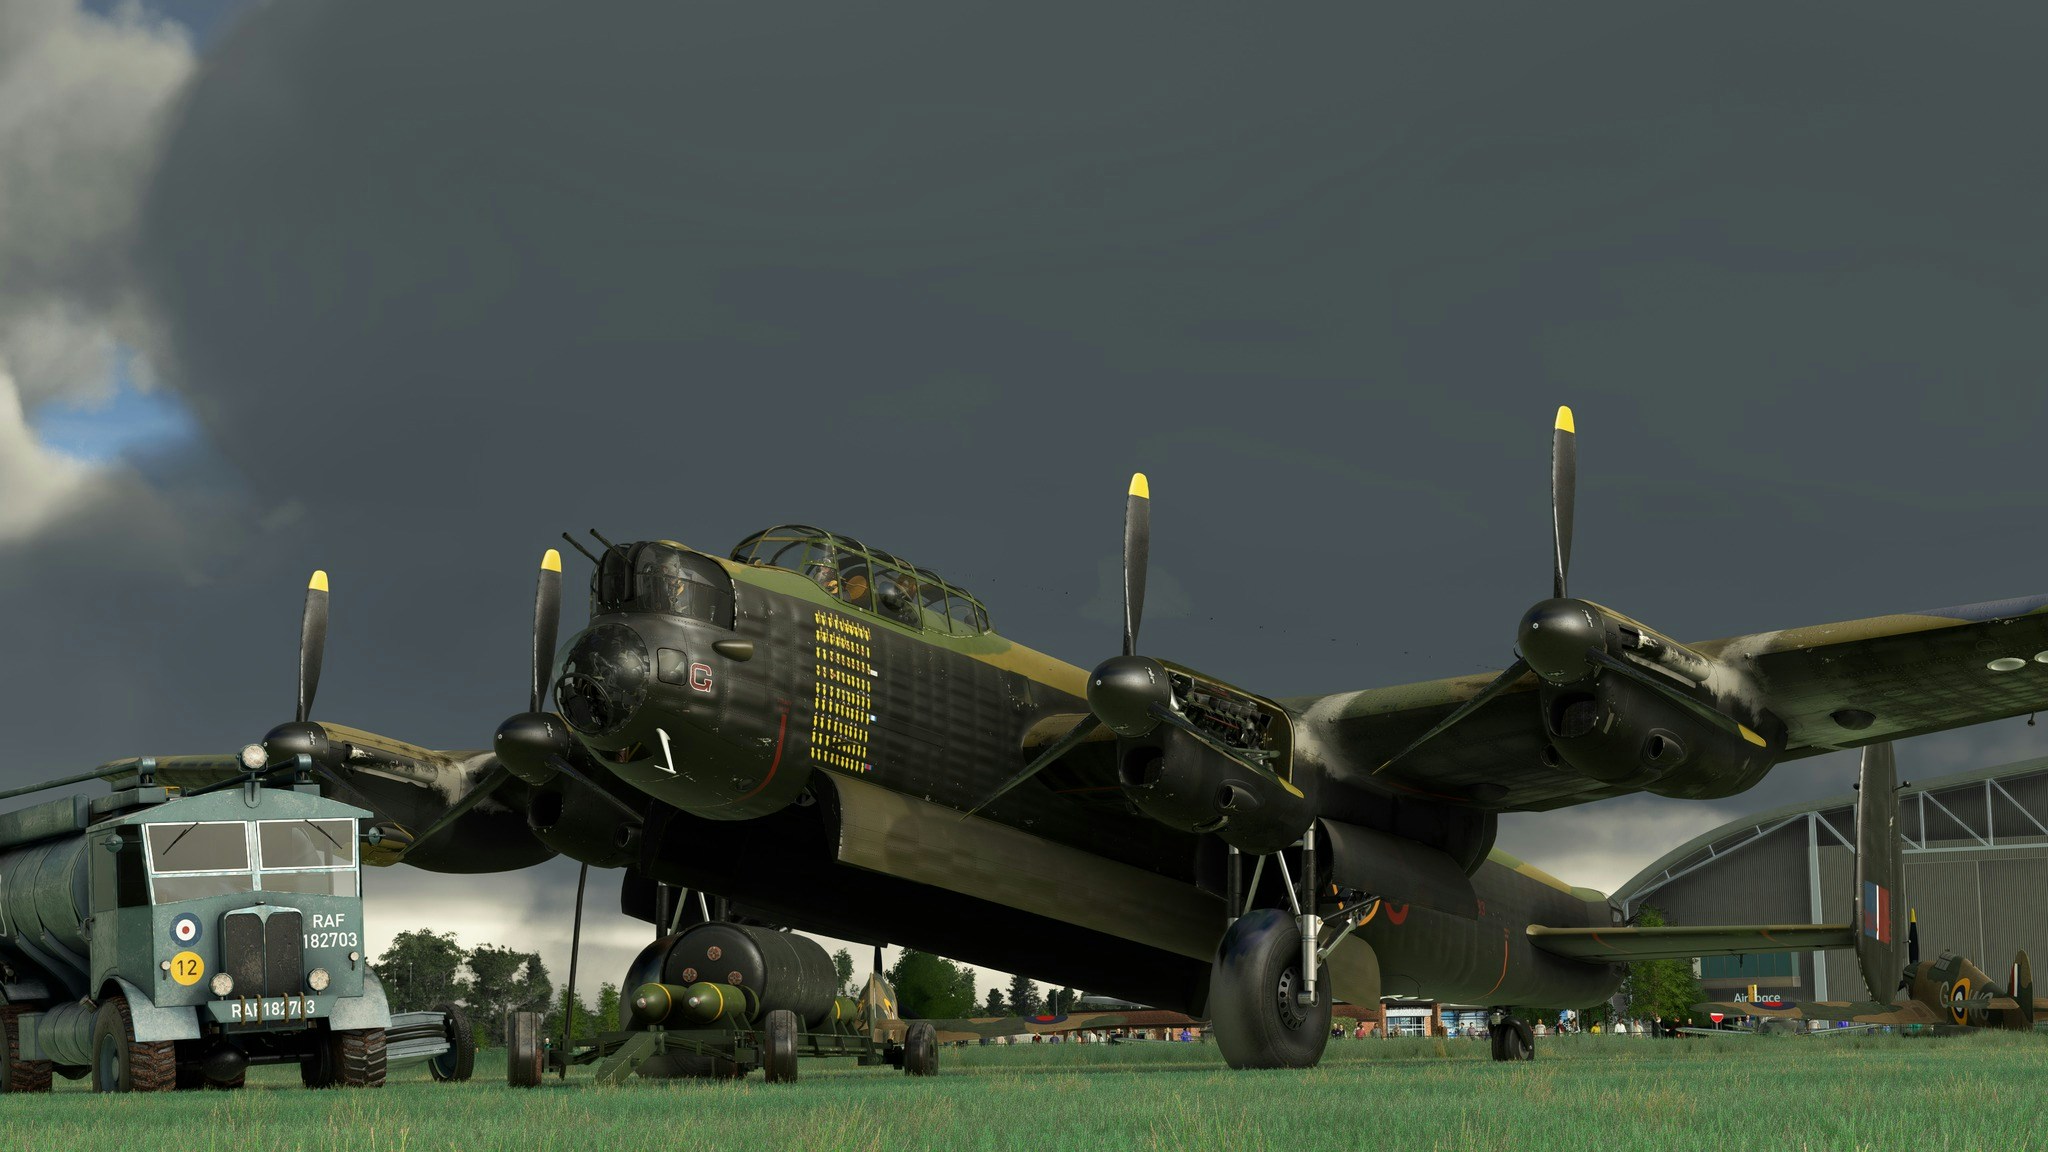 Aeroplane Heaven Avro Lancaster Previews